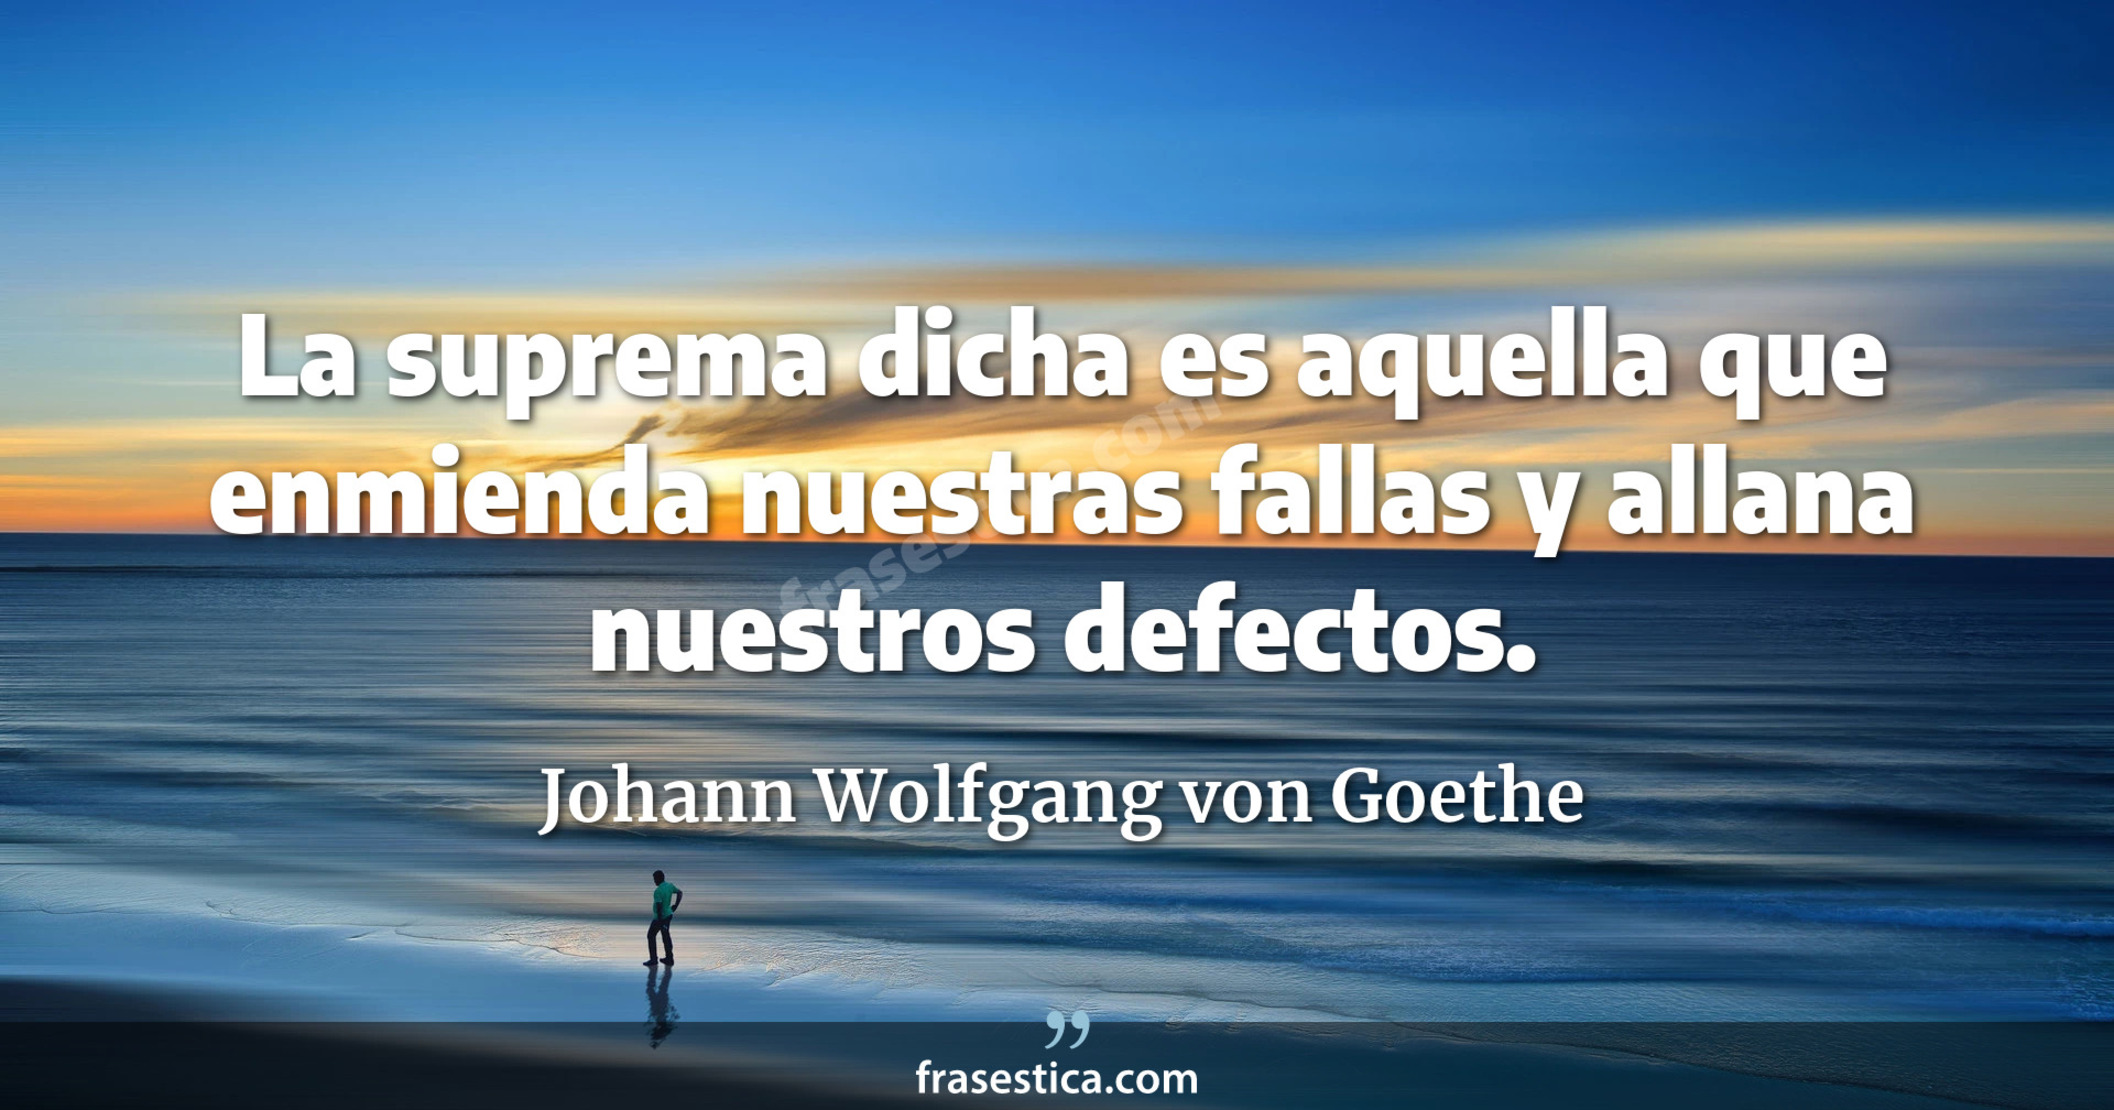 La suprema dicha es aquella que enmienda nuestras fallas y allana nuestros defectos. - Johann Wolfgang von Goethe